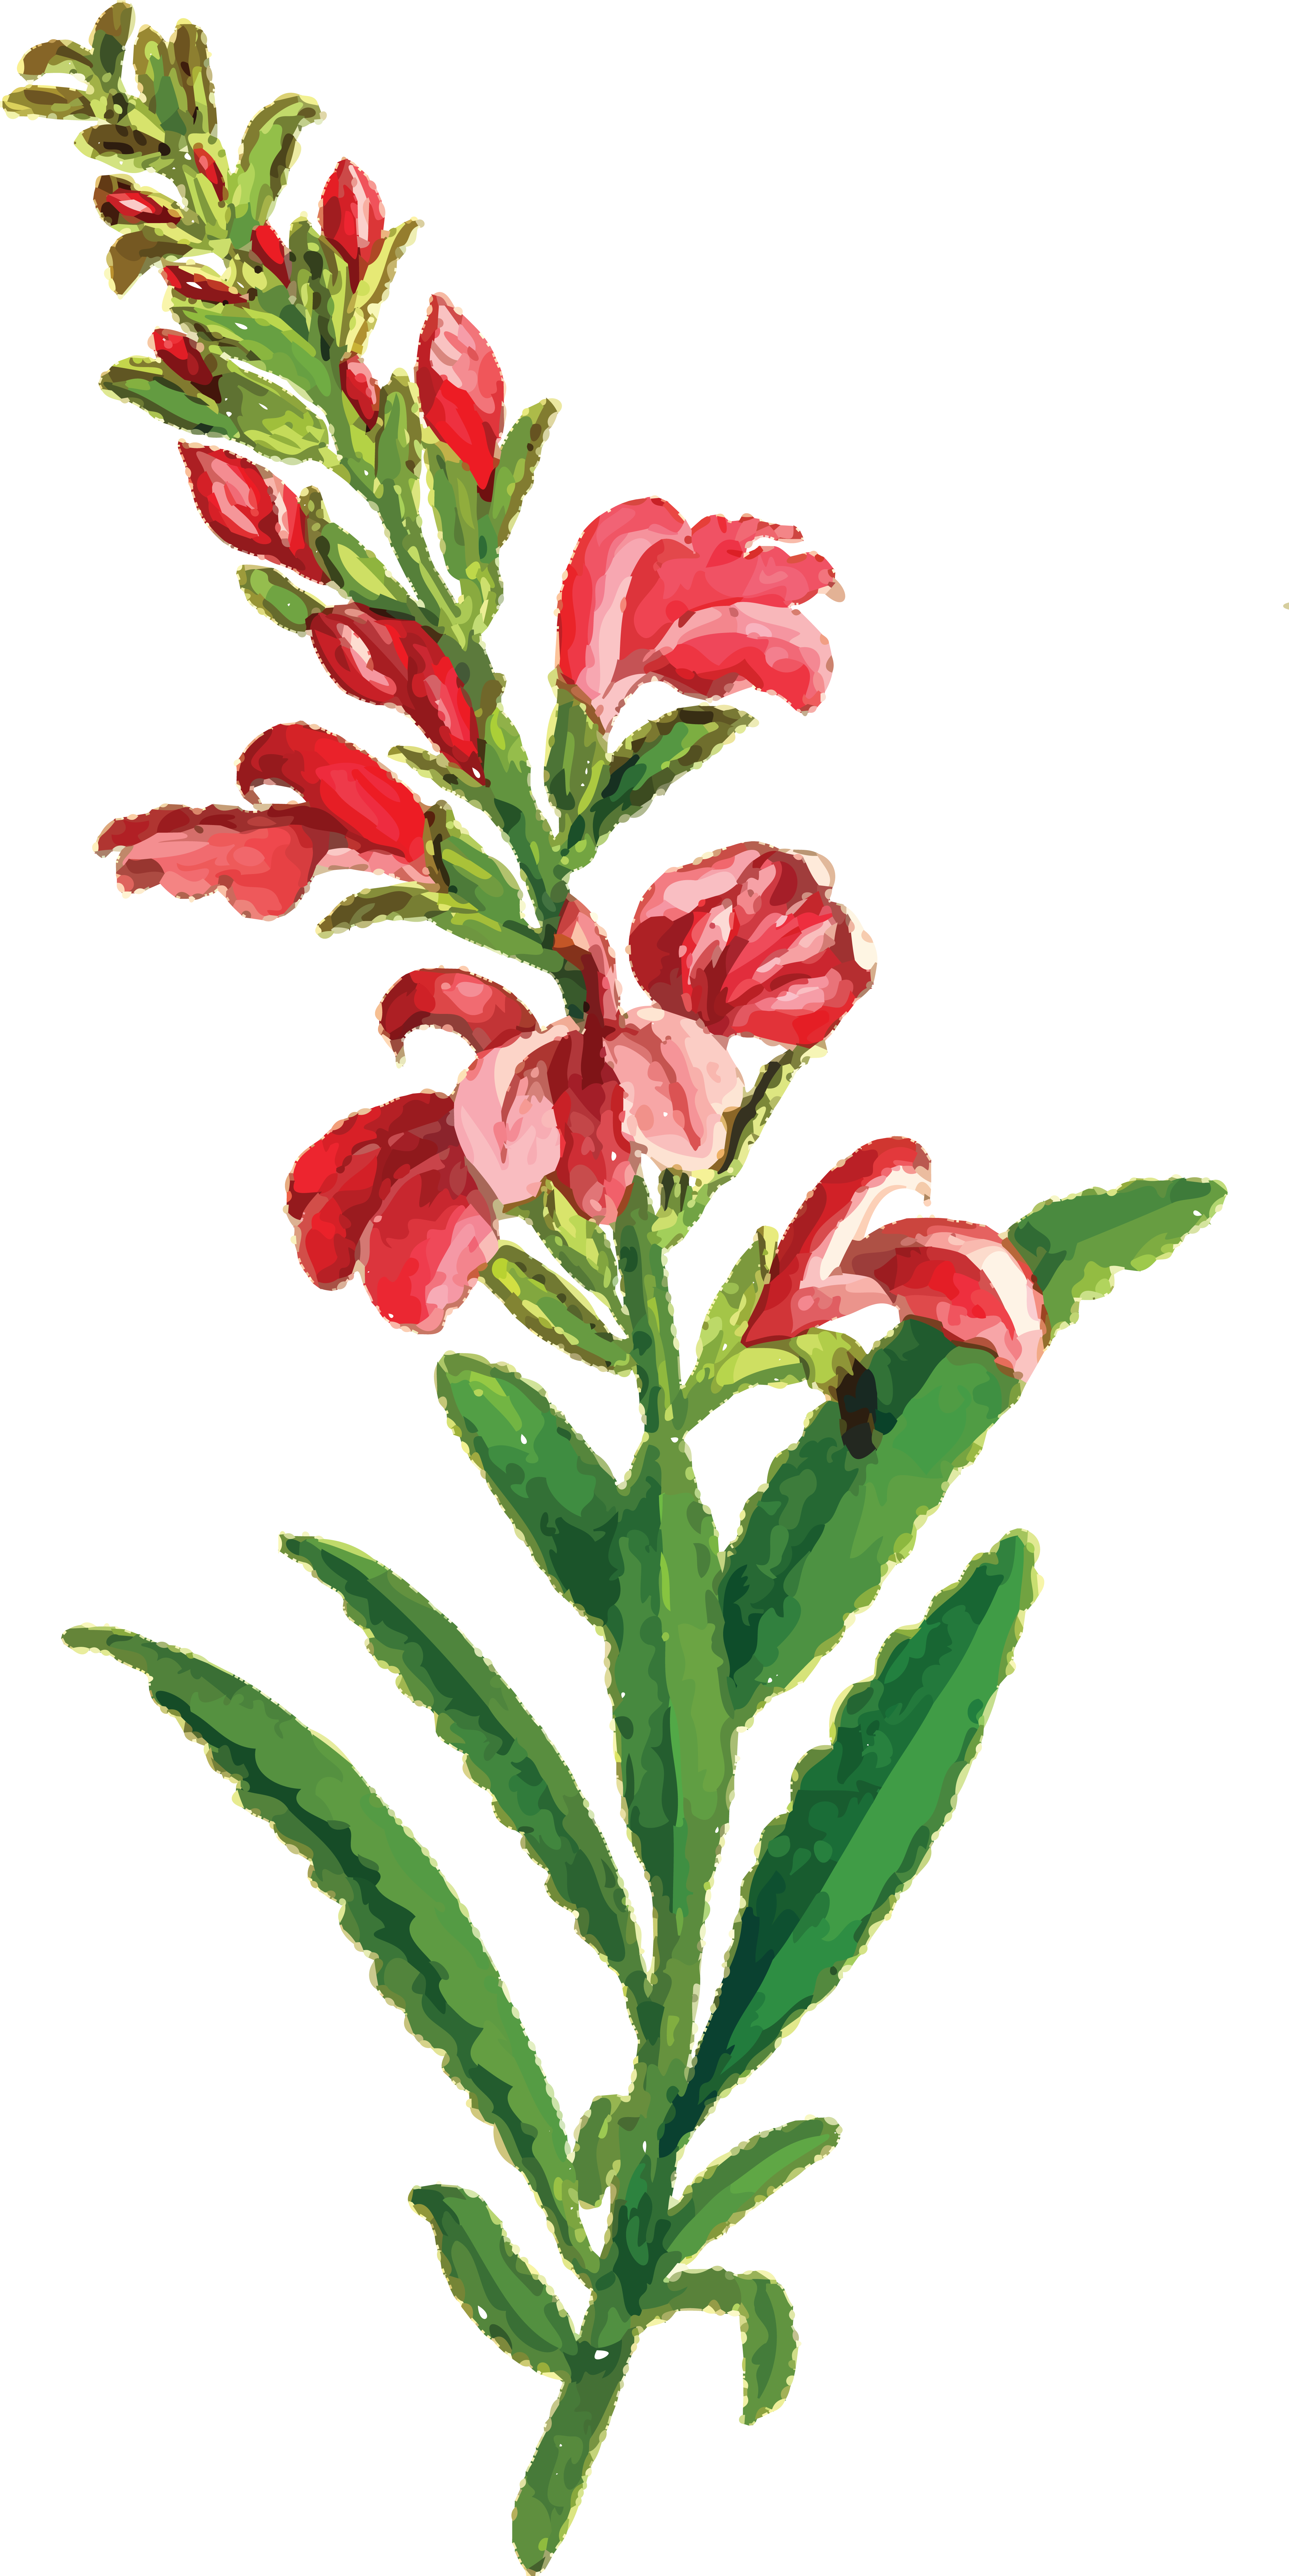 Free Clipart Of A Flowering Plant - Vintage Blumenhochzeit Uawg-karten Postkarte (4000x7993)